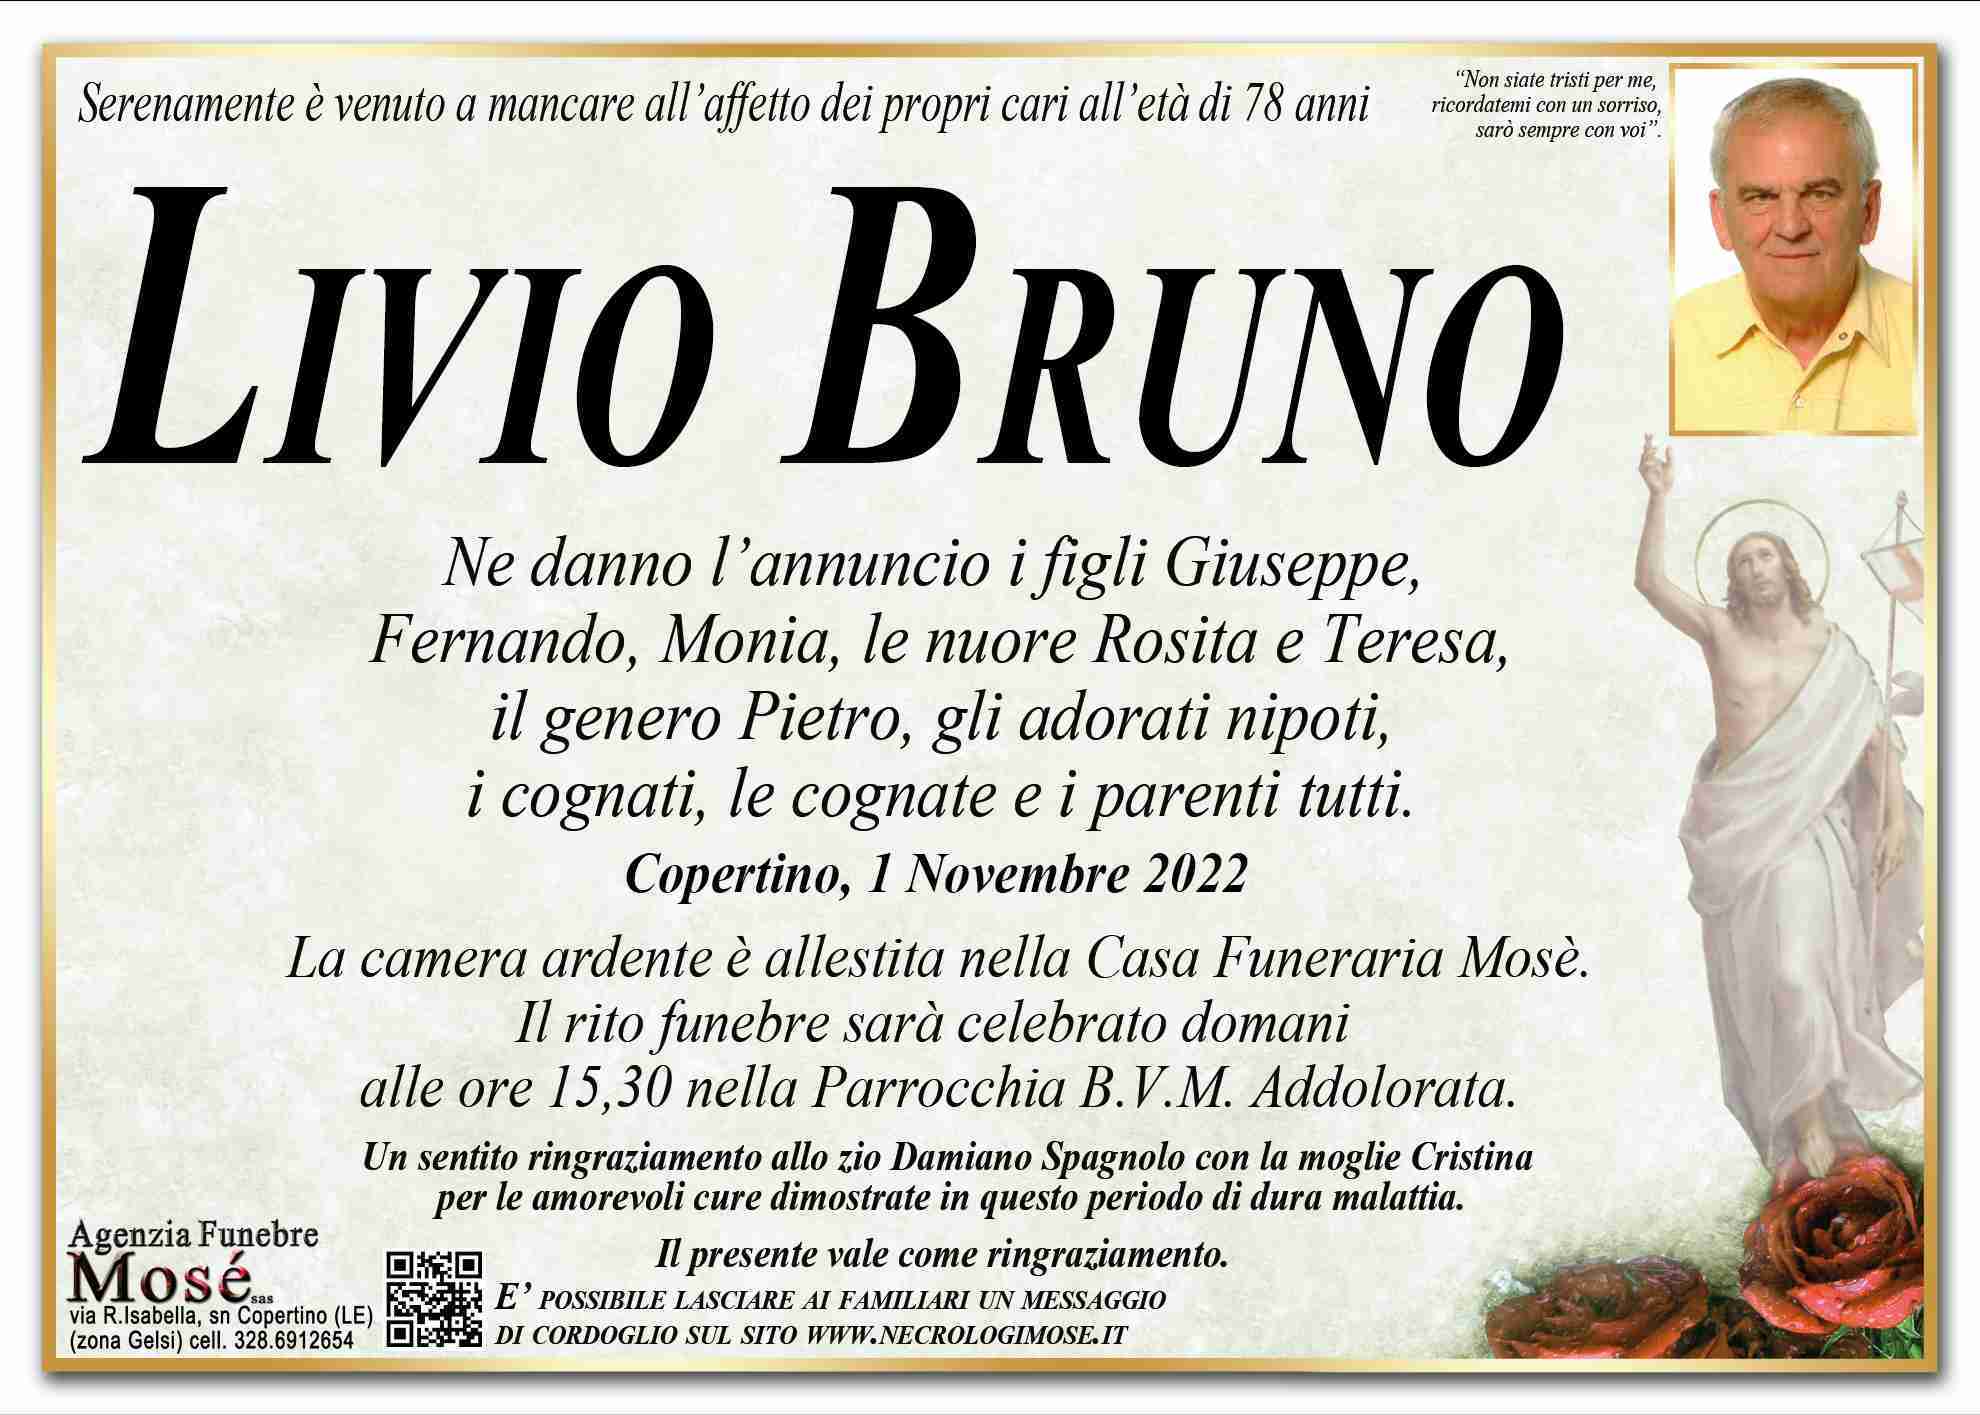 Livio Bruno